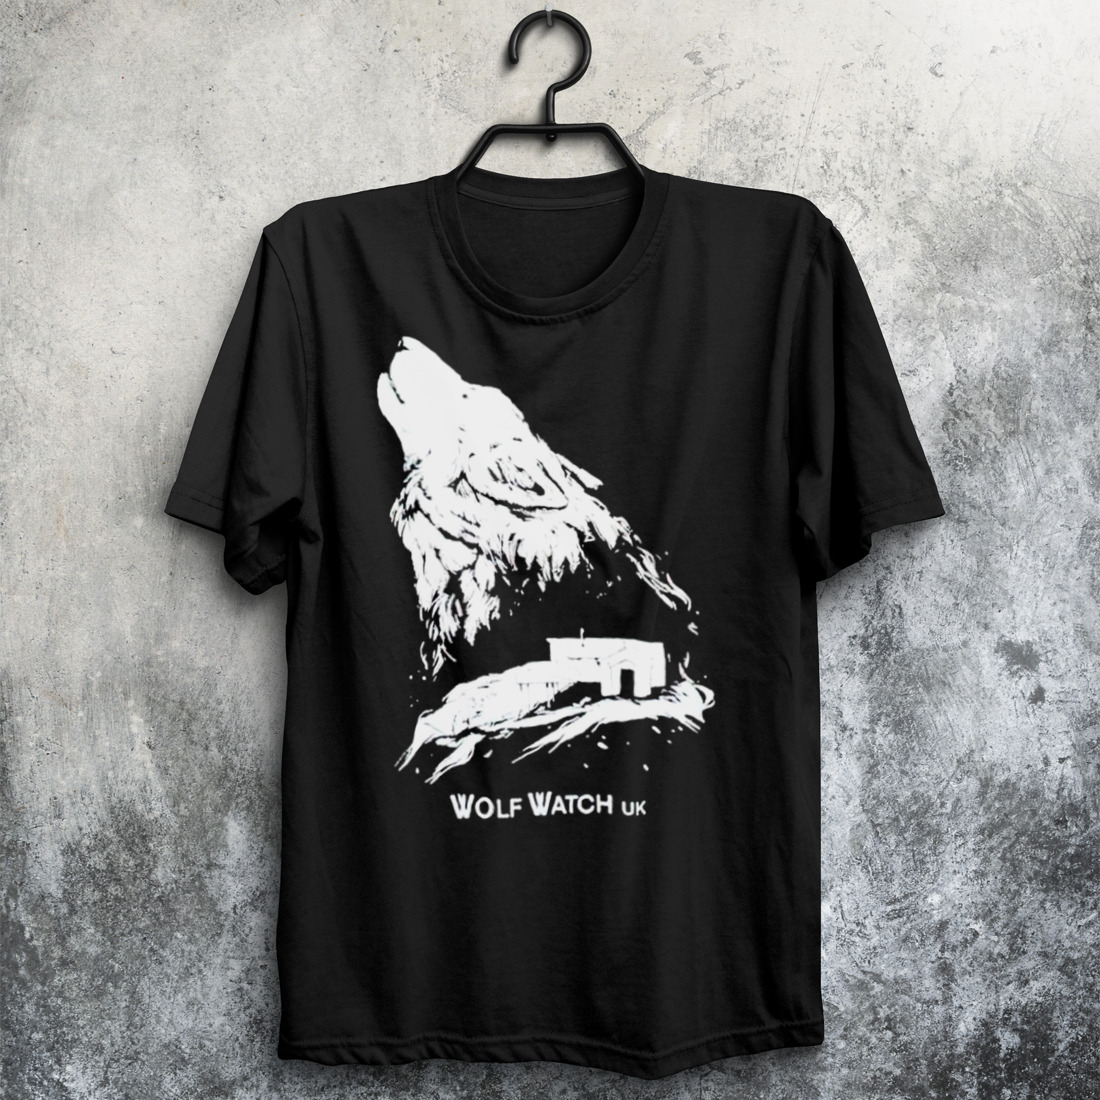 Wolf Watch Uk shirt